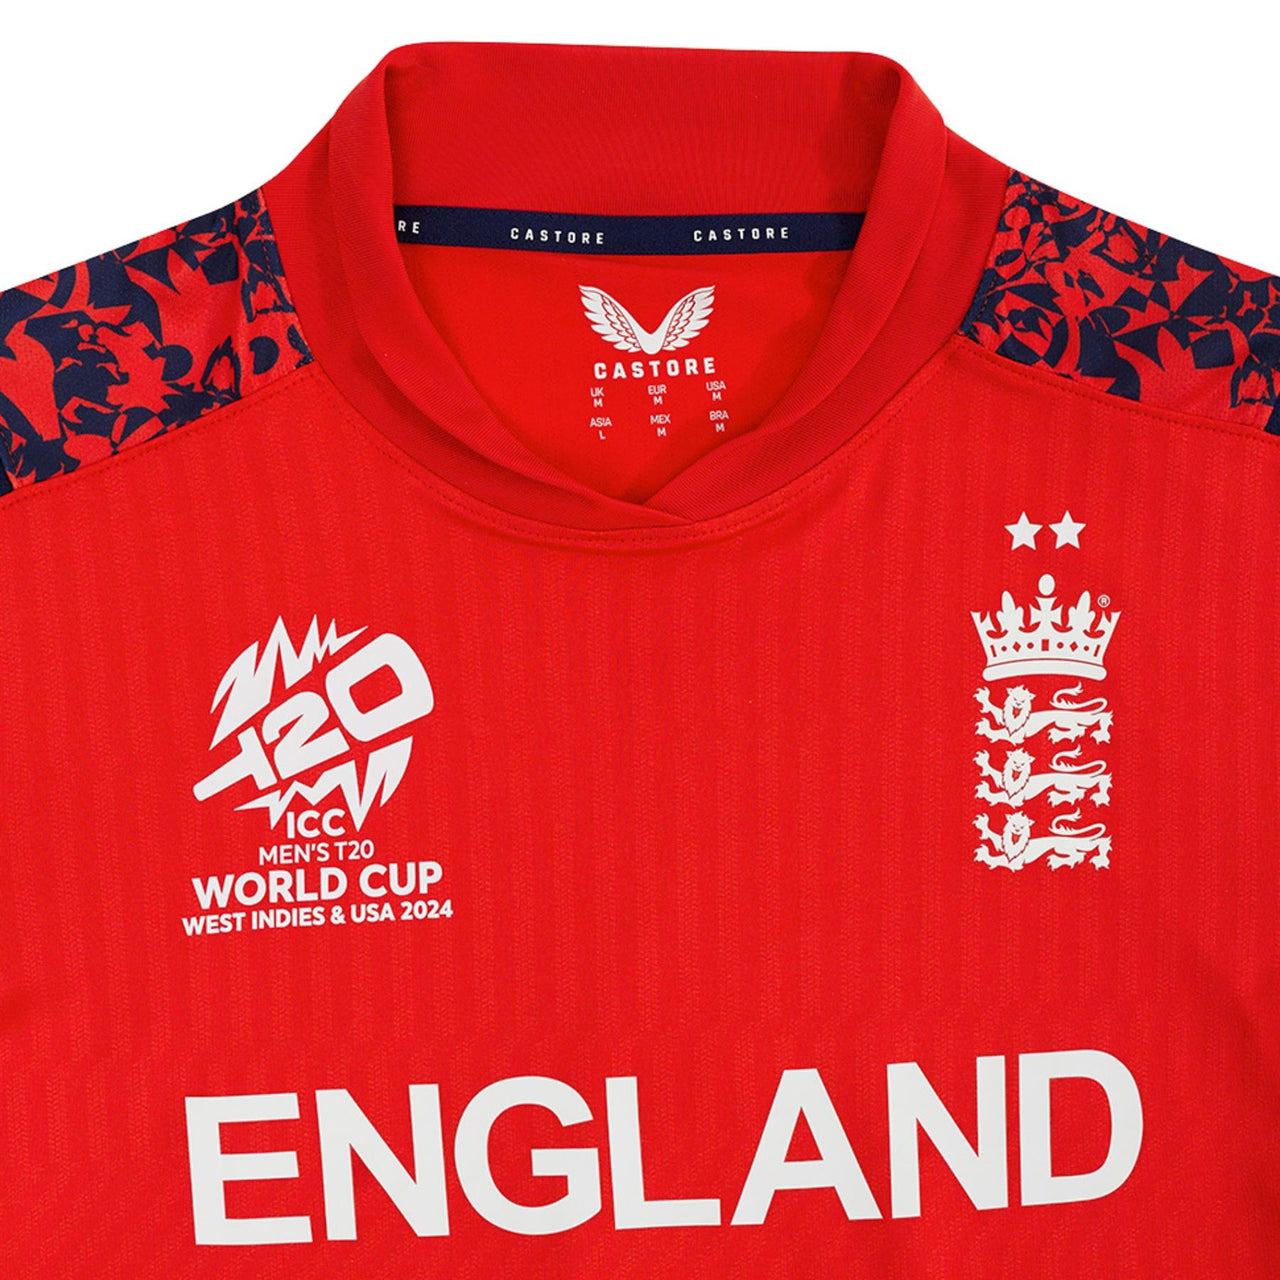 England Cricket Men's T20 World Cup Replica Short Sleeve Shirt | Fiery Red | 2024